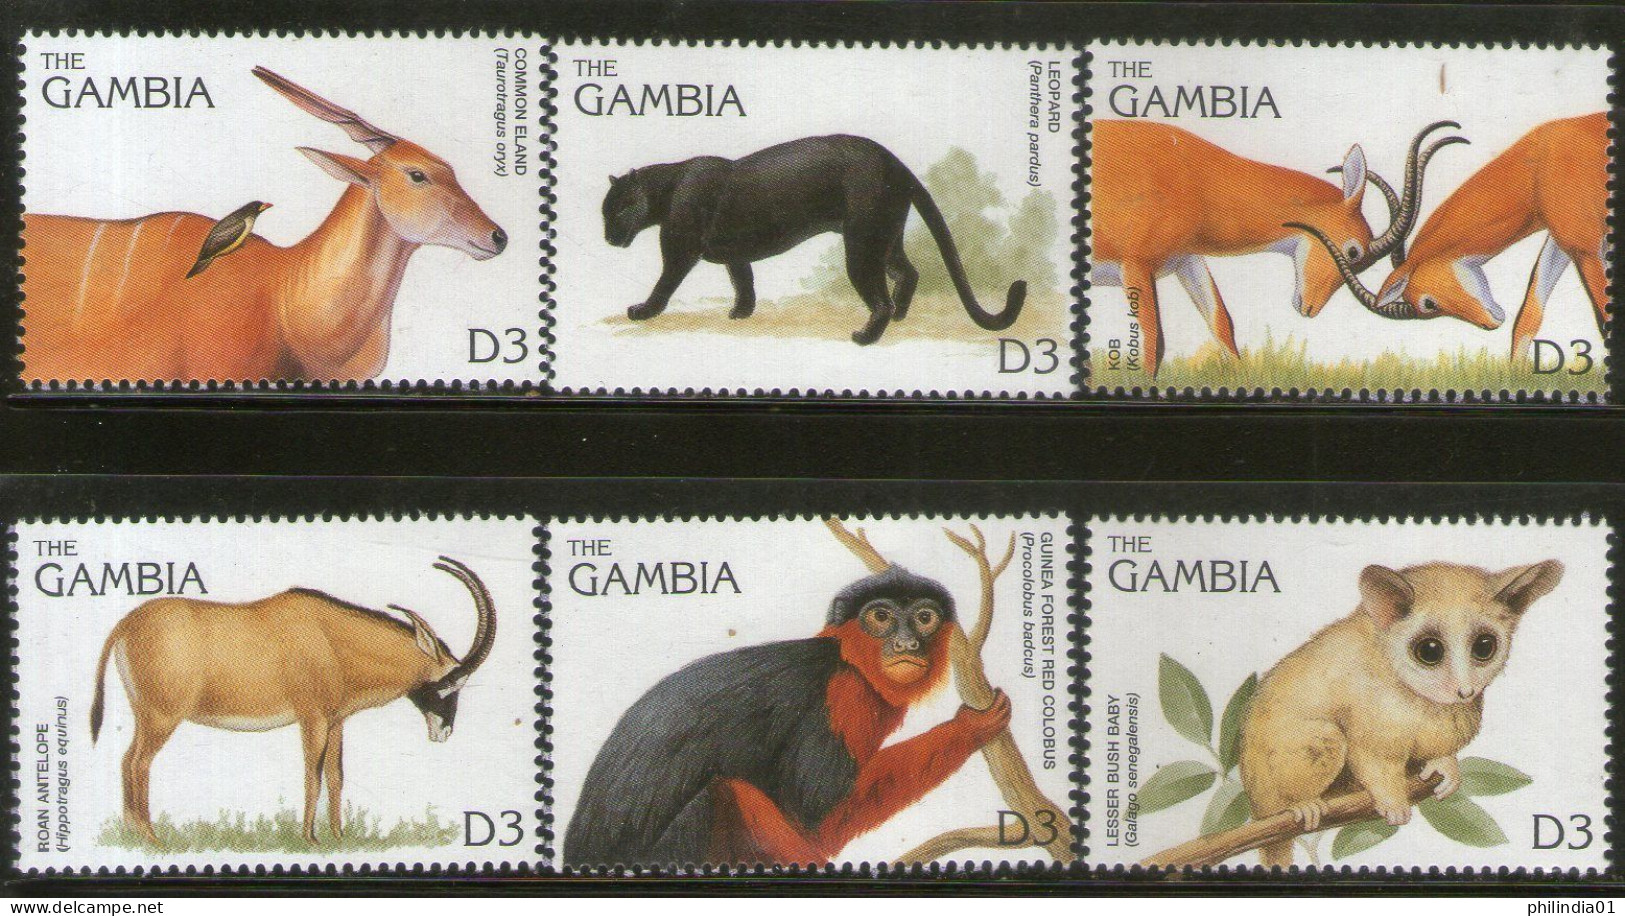 Gambia 1996 Monkey Mammals Wildlife Animals Sc 1740 6v MNH # 807 - Mono